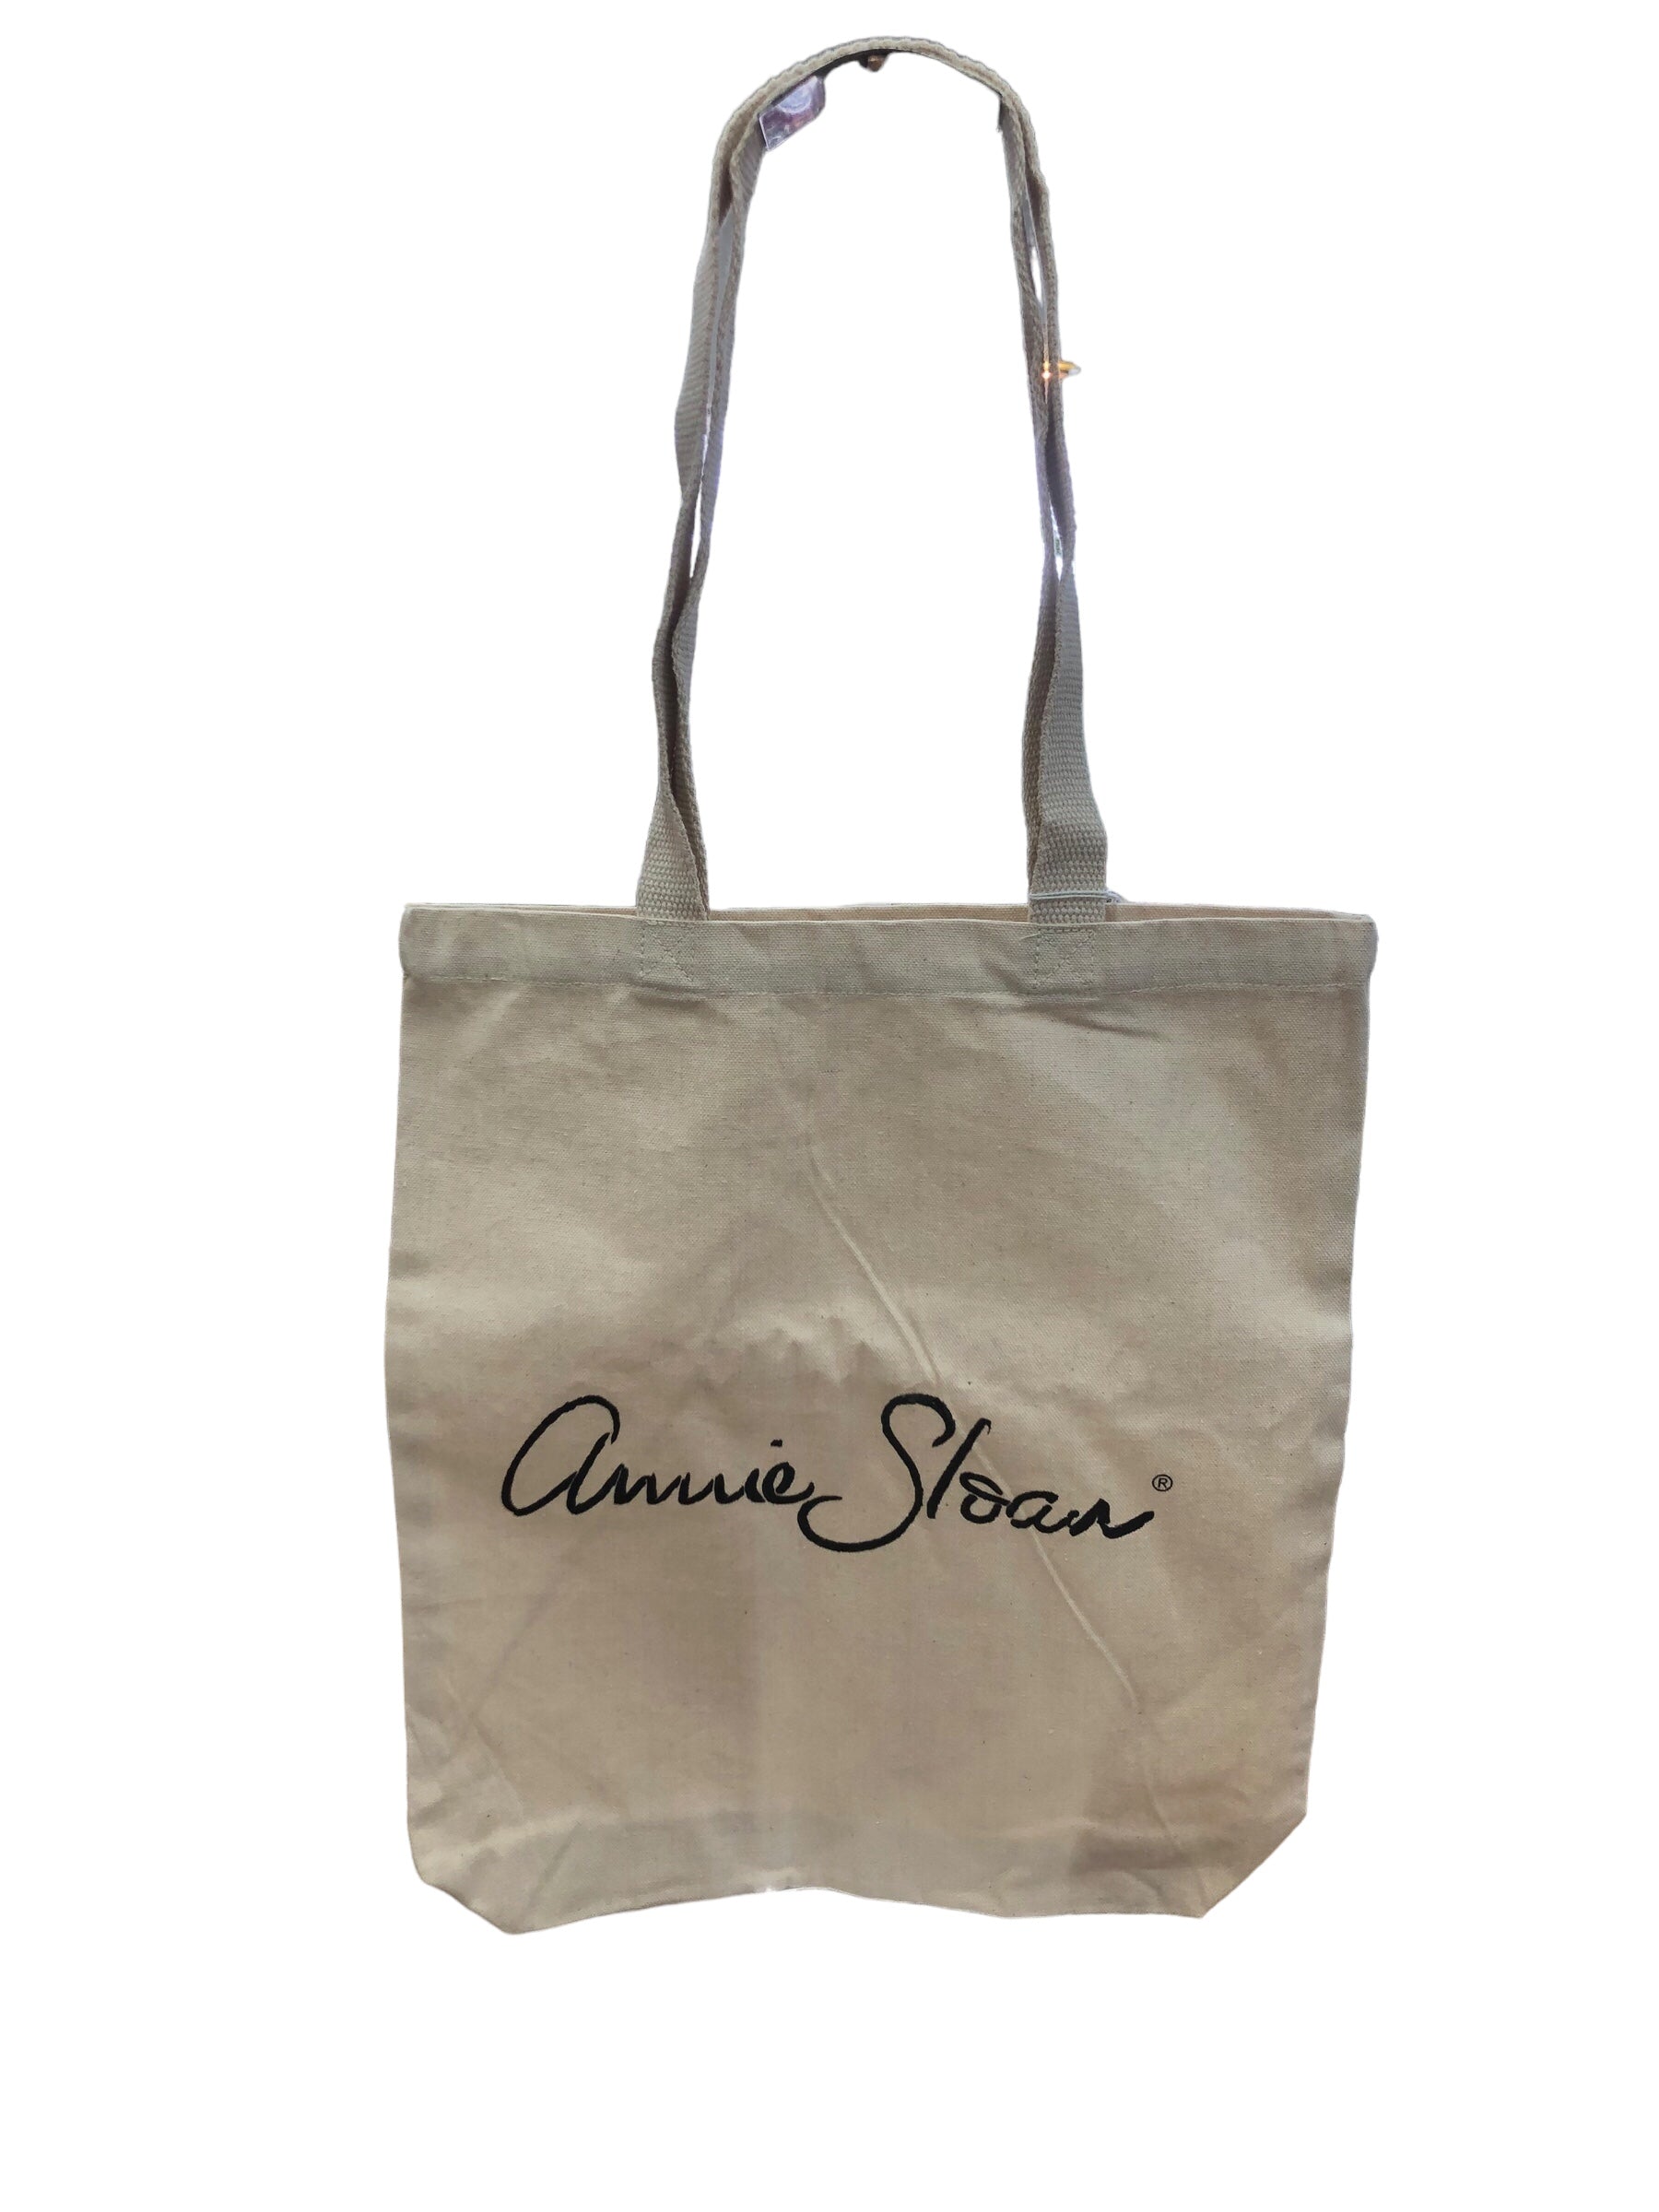 Annie Sloan Canvas Bags